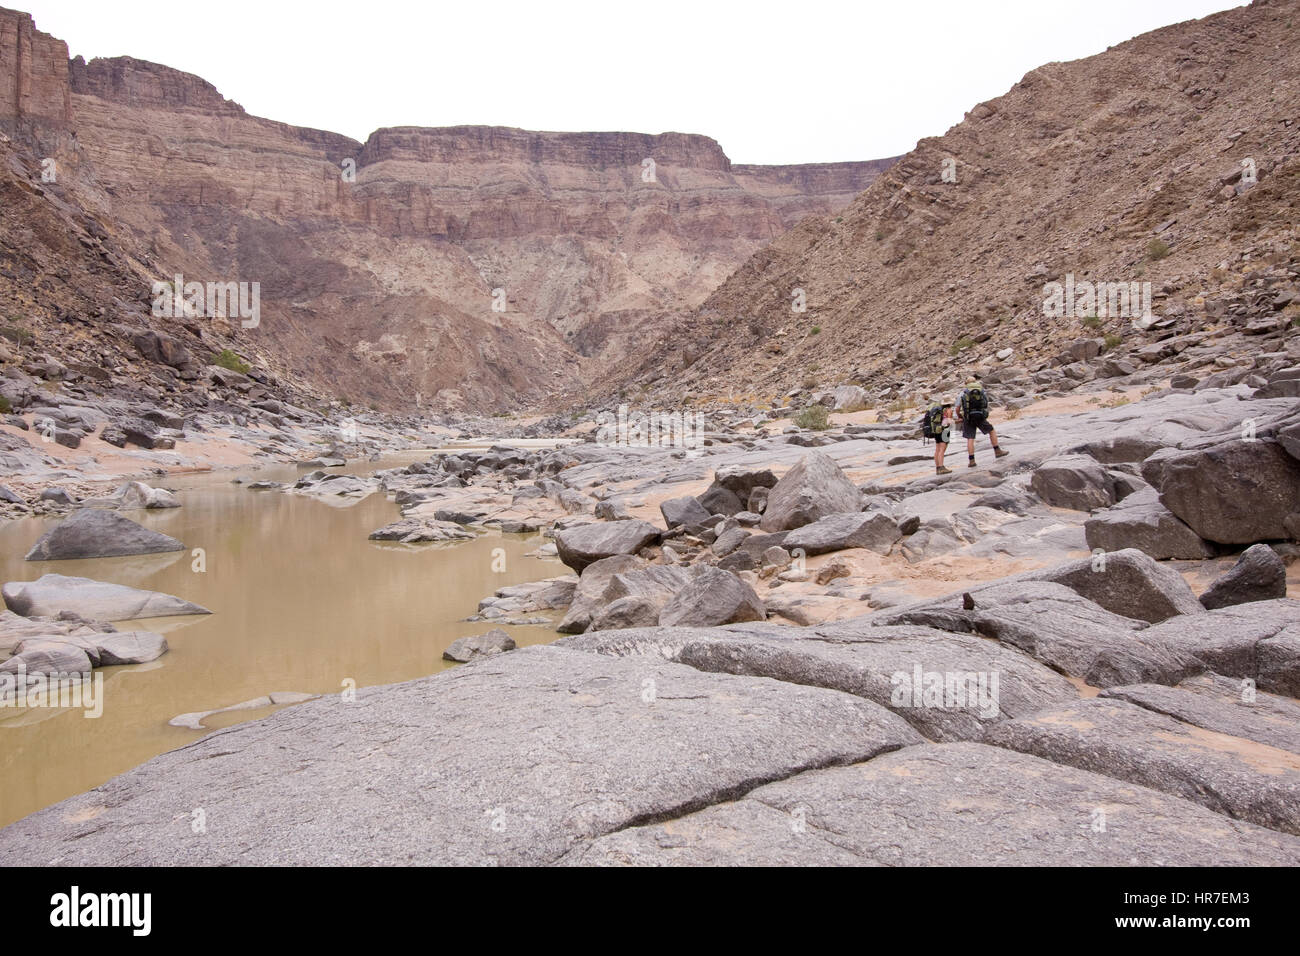 Der Fish River Canyon wandern ist eine wandernde Spur über mehrere Tage durch den harten aber aufregenden Wüstenbedingungen. Wanderer müssen gut vorbereitet sein. Stockfoto